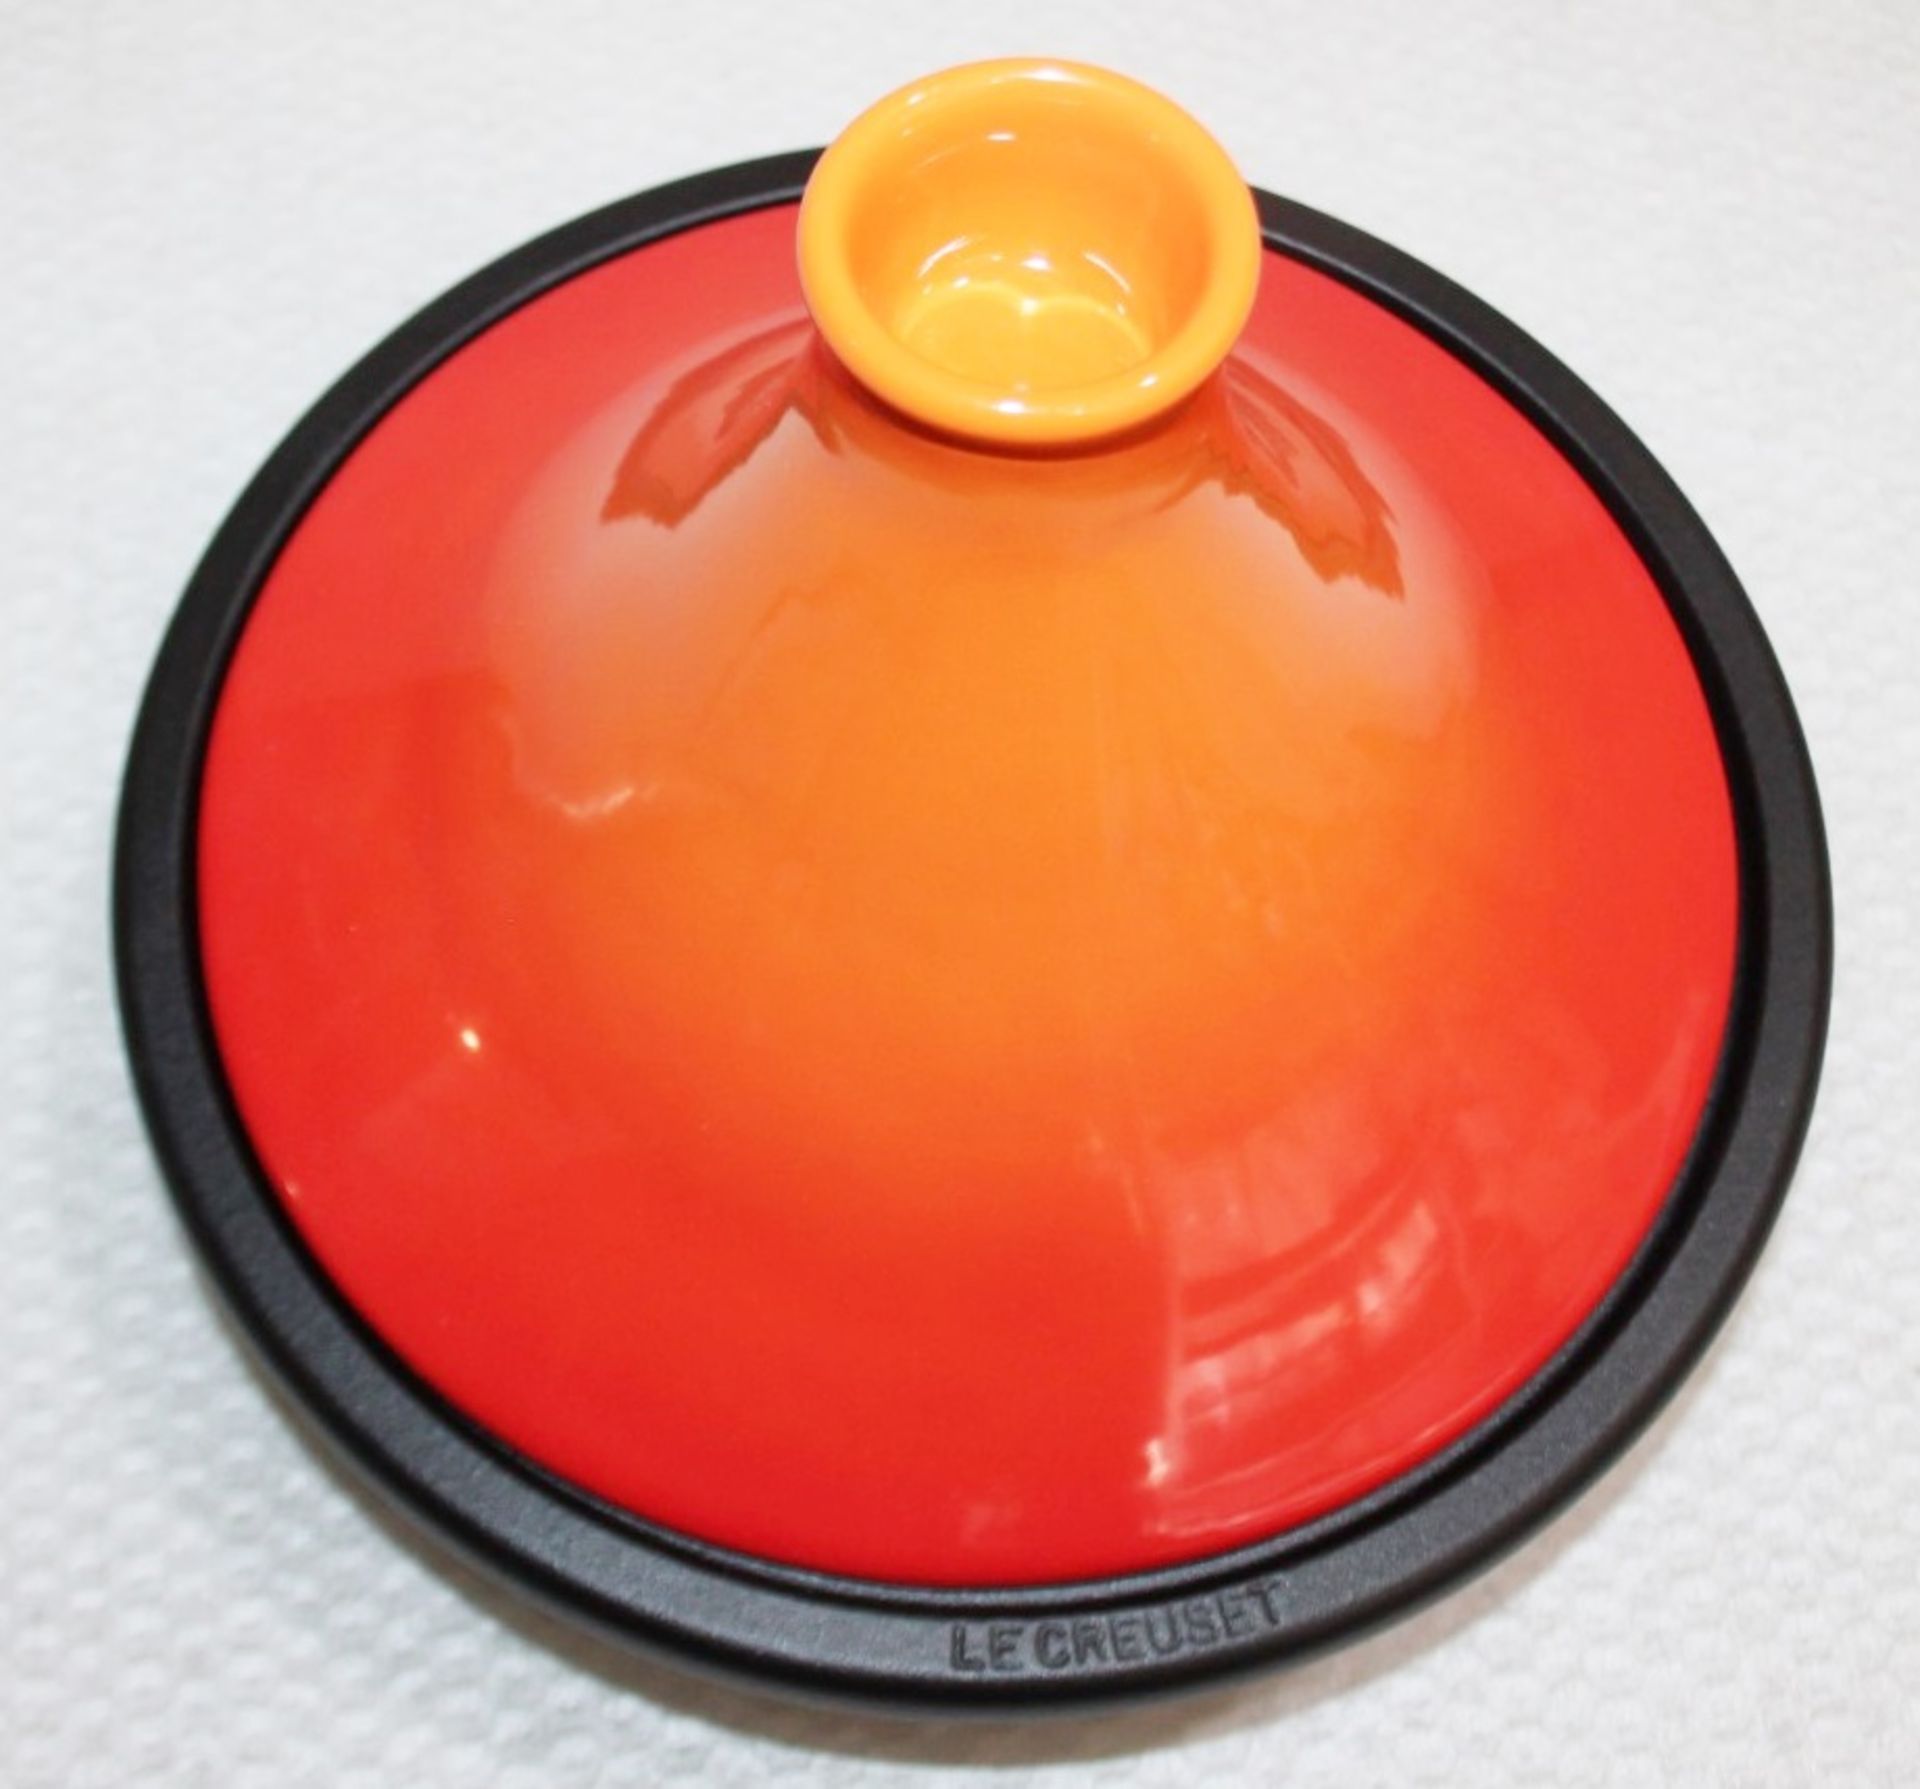 1 x LE CREUSET Ceramic & Cast Iron Tagine In Signature Volcanic Orange - Original Price £159.00 - Image 3 of 10